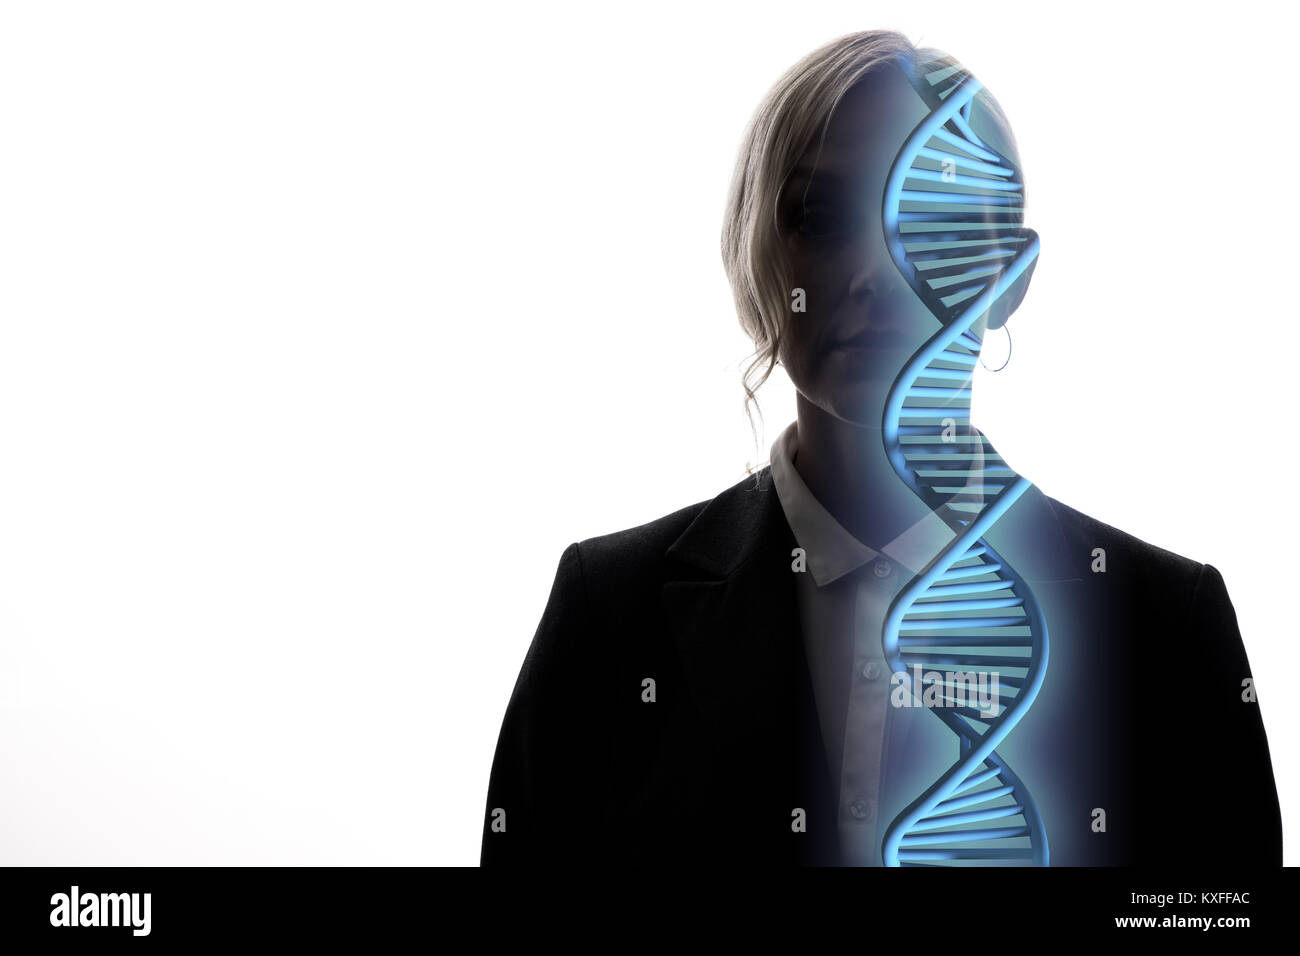 genetic engineering concept. 3D rendering. Stock Photo